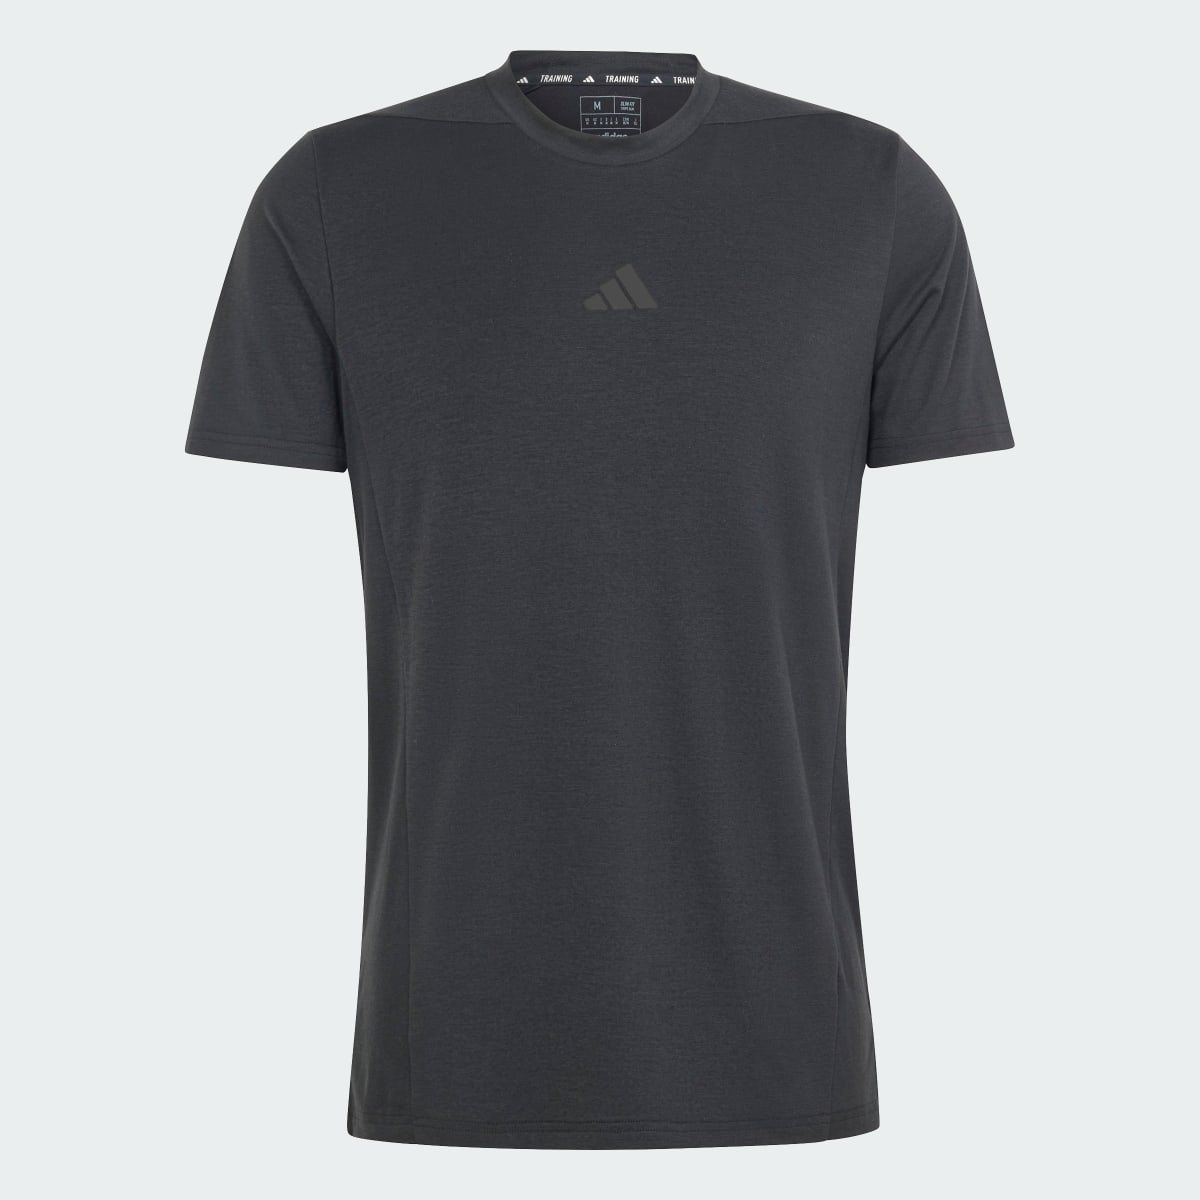 Adidas Designed for Training Antrenman Tişörtü. 5